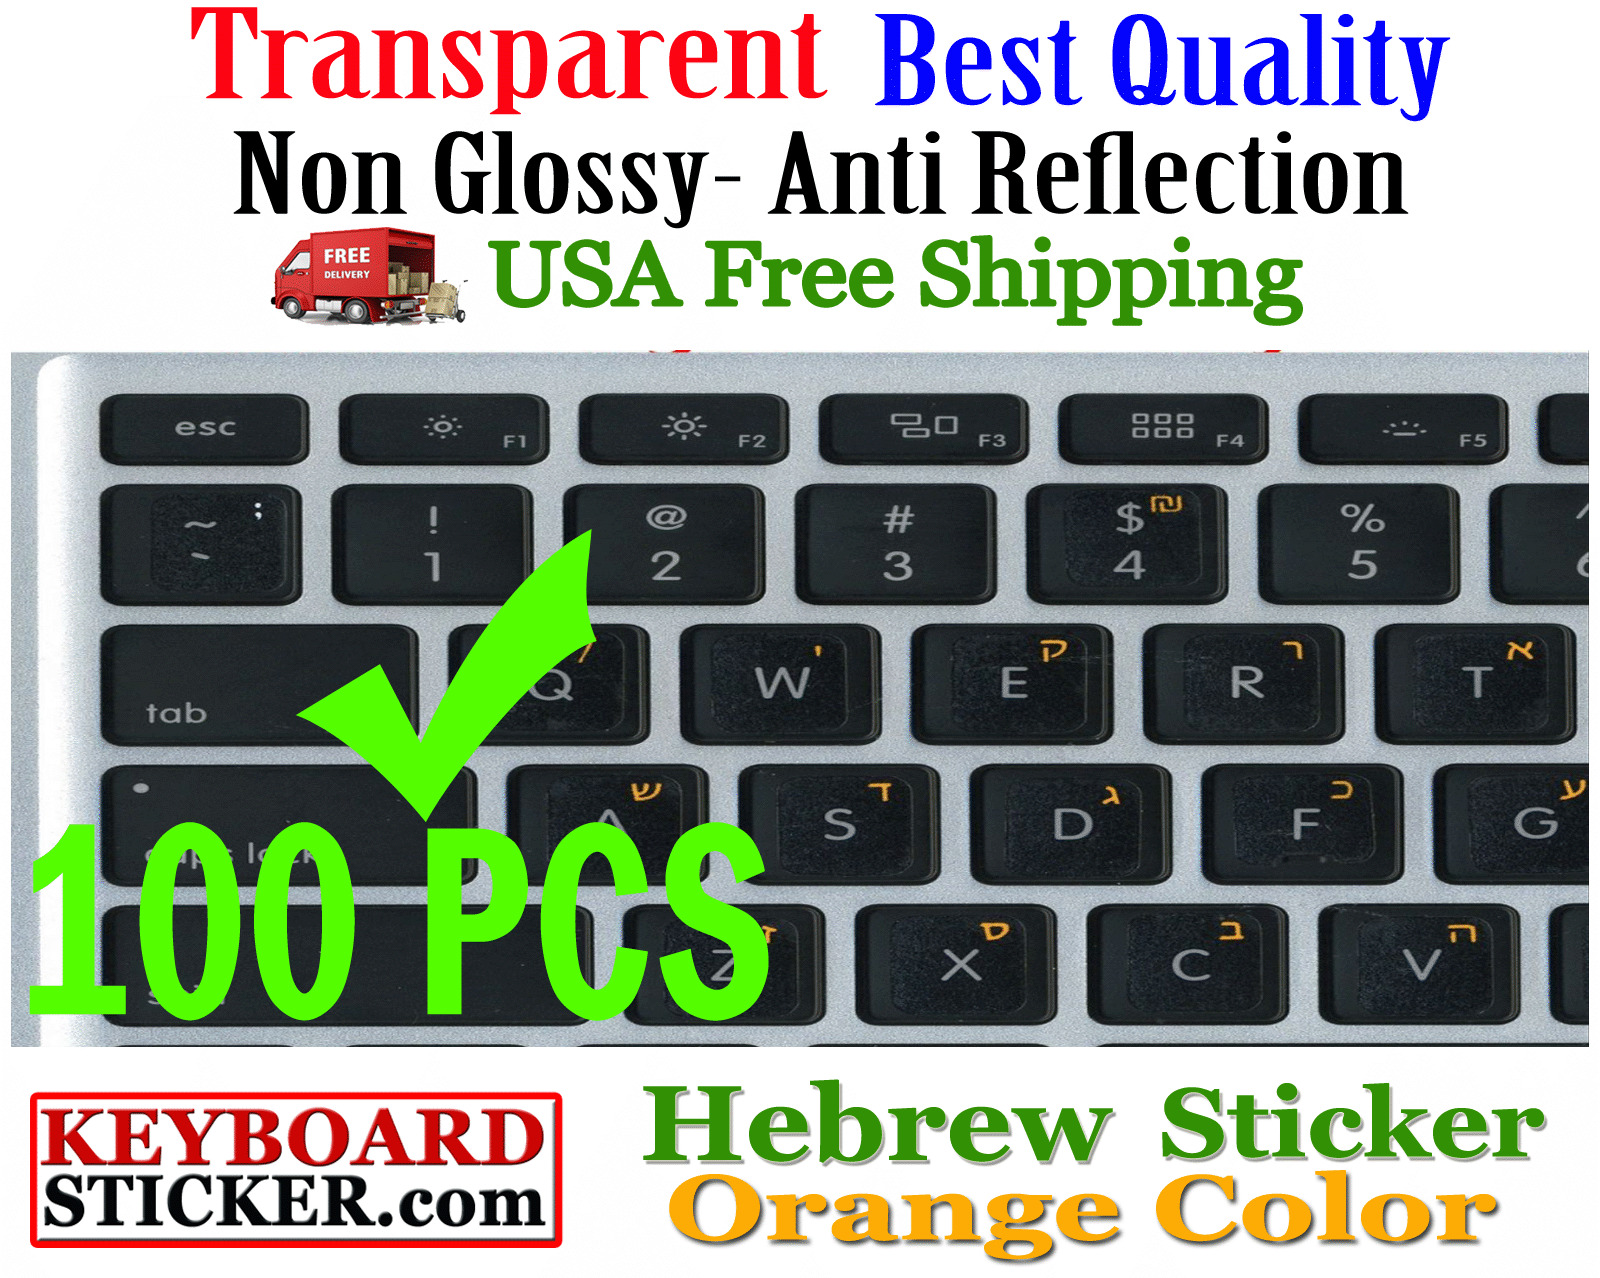 Hebrew Orange letters Keyboard Sticker Transparent Reseller 100 Pack DEAL